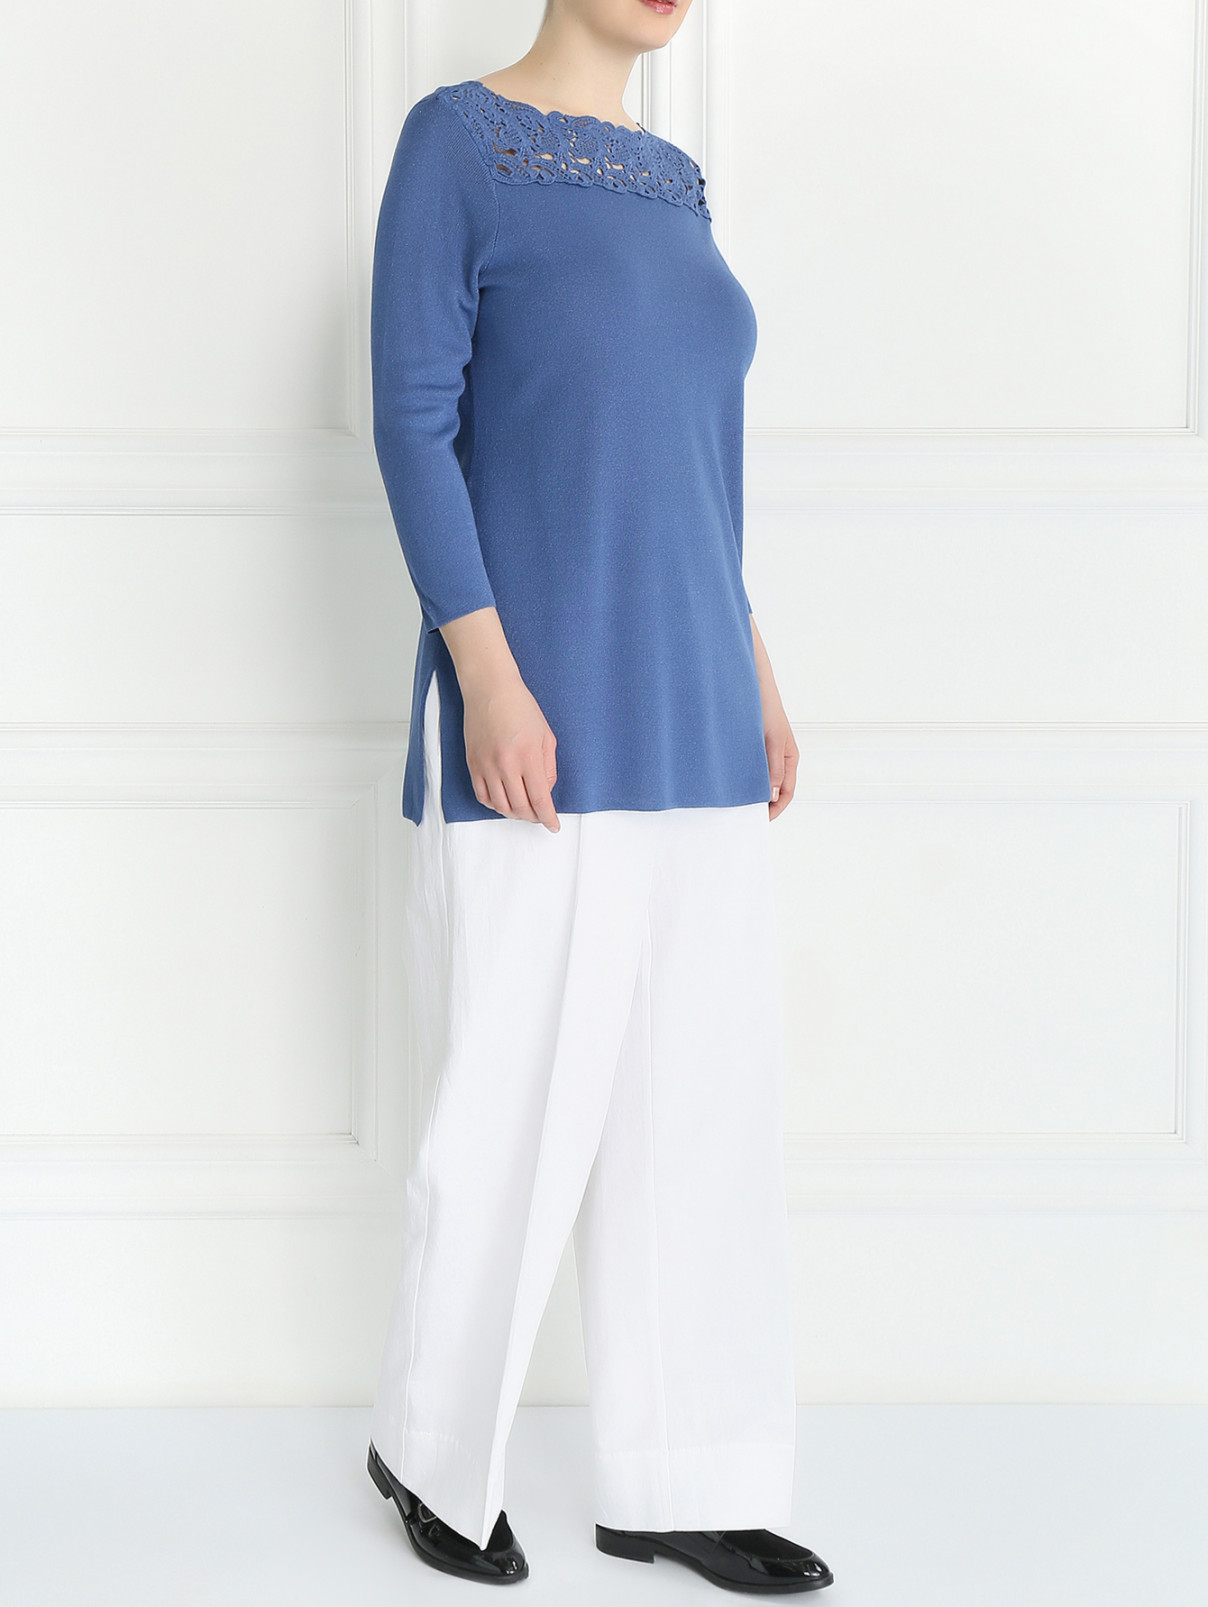 Джемпер с вышивкой Marina Rinaldi  –  Модель Общий вид  – Цвет:  Синий